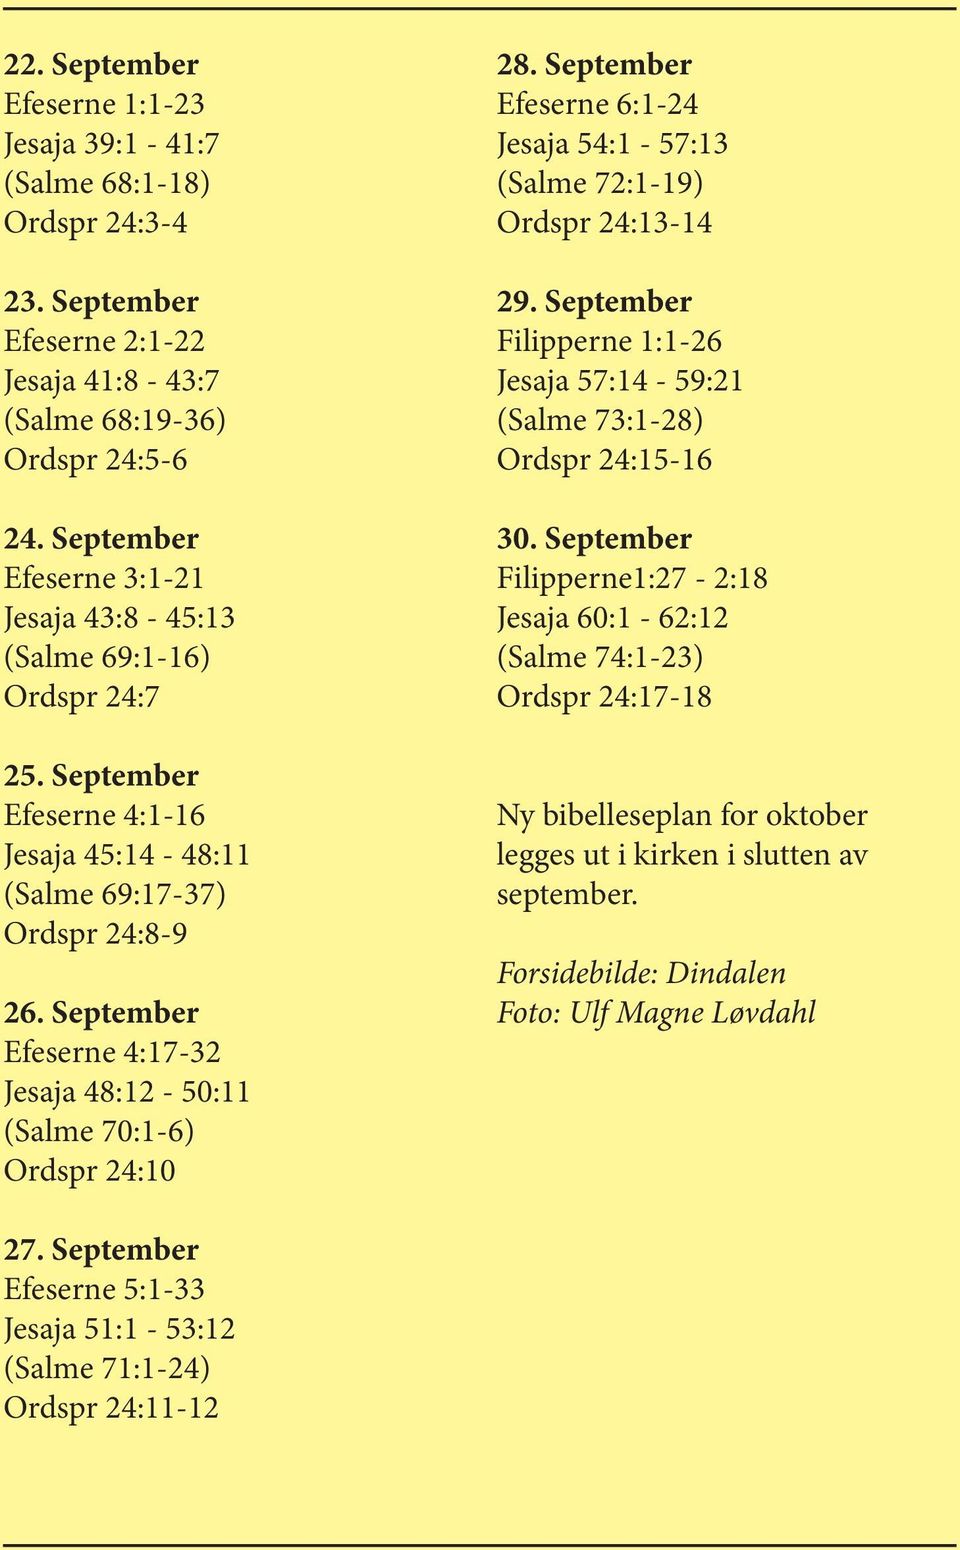 September Efeserne 4:17-32 Jesaja 48:12-50:11 (Salme 70:1-6) Ordspr 24:10 28. September Efeserne 6:1-24 Jesaja 54:1-57:13 (Salme 72:1-19) Ordspr 24:13-14 29.